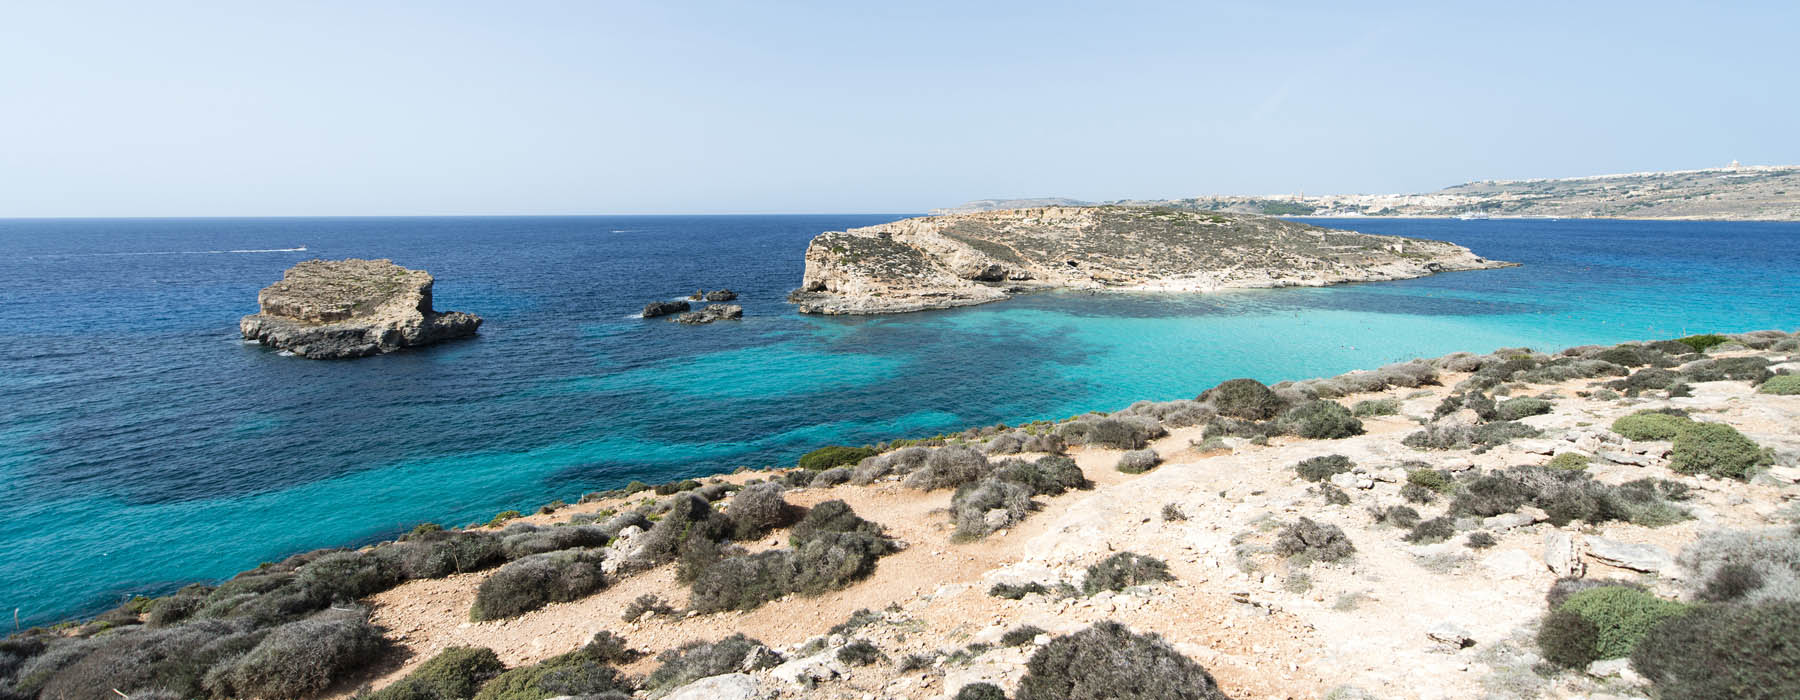 Tous nos voyages L'île de Gozo